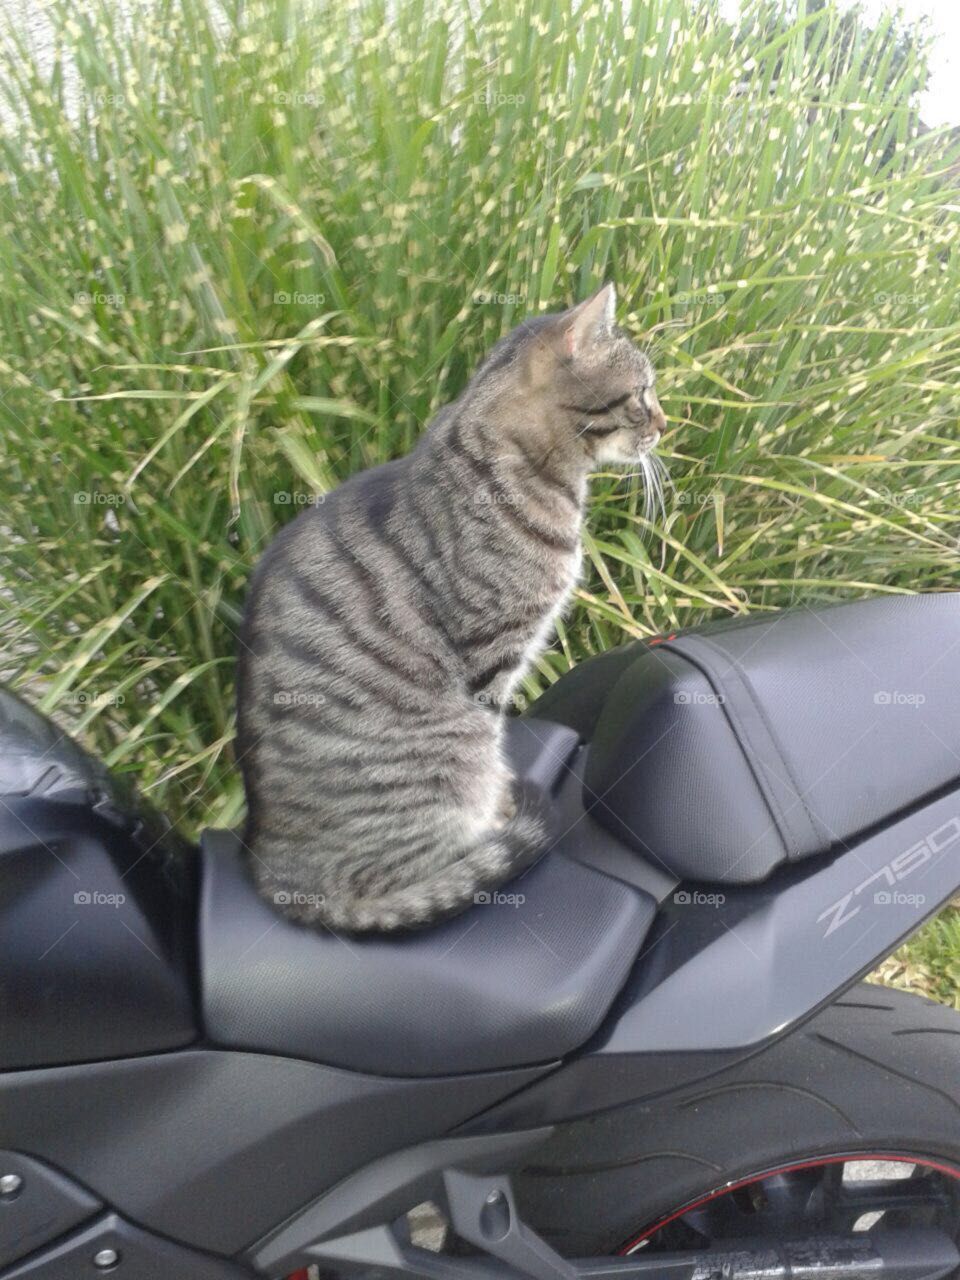 cat at bike